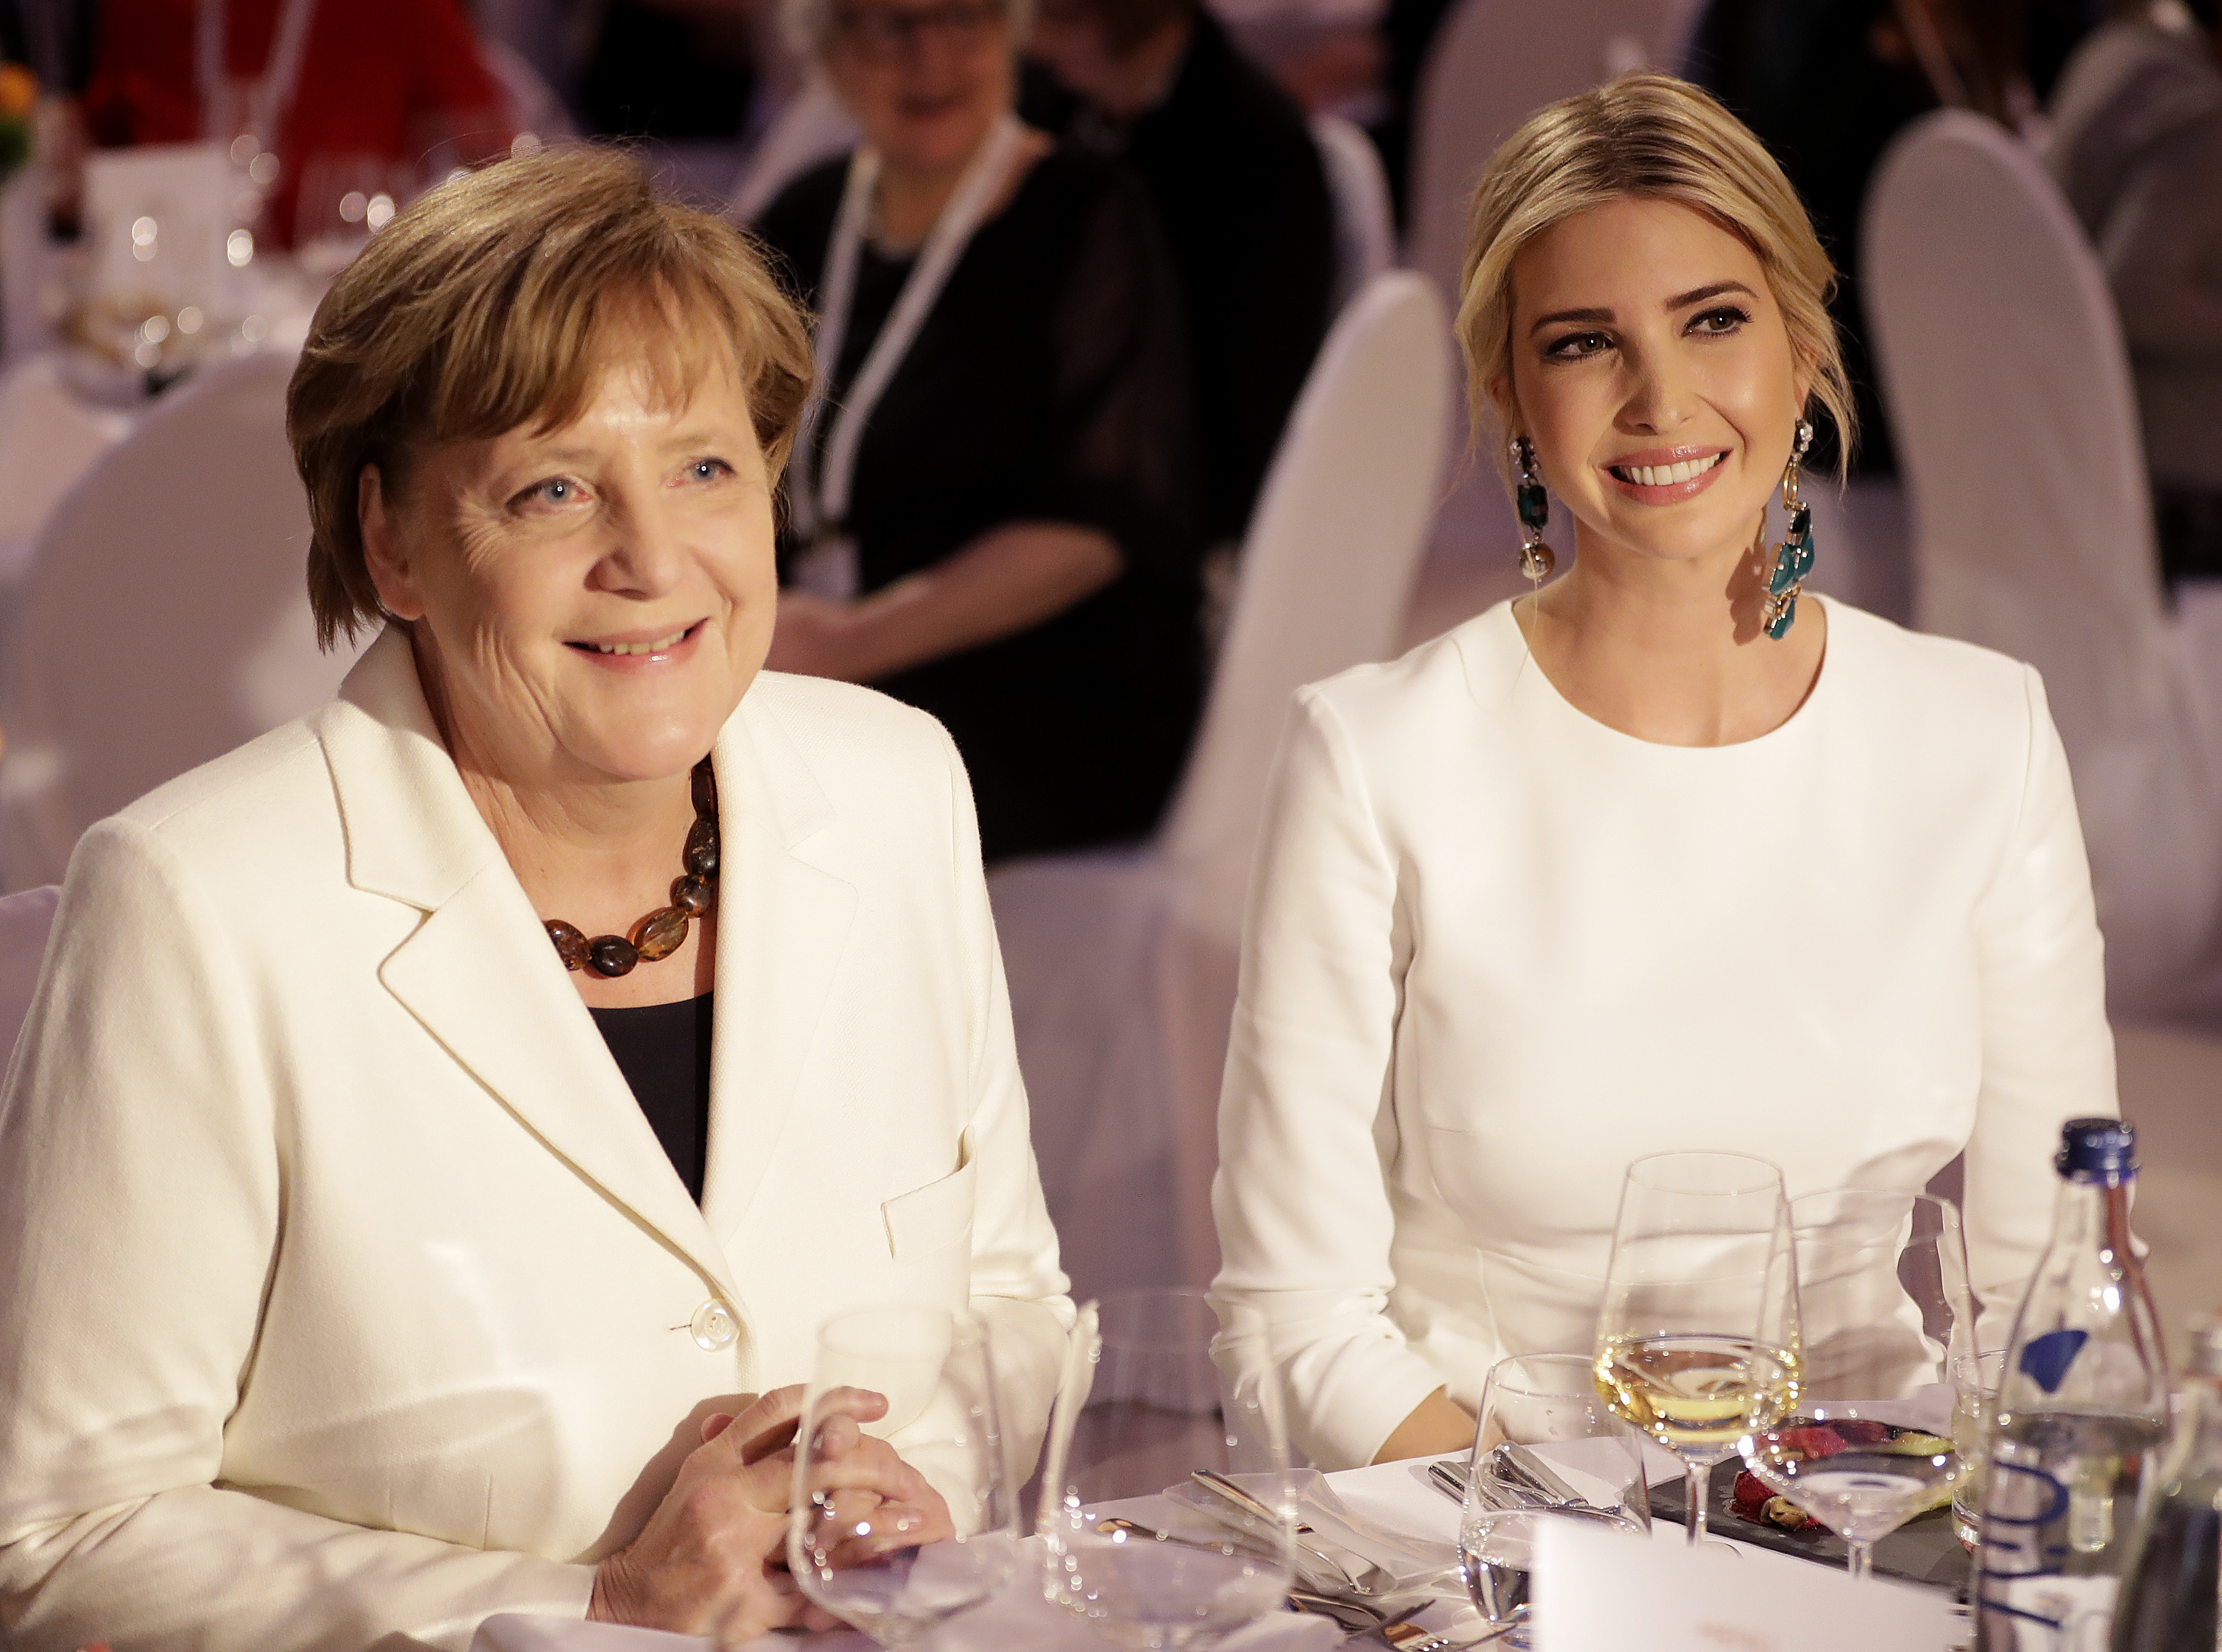 Иванка и Меркел се облякоха в тон на гала вечеря